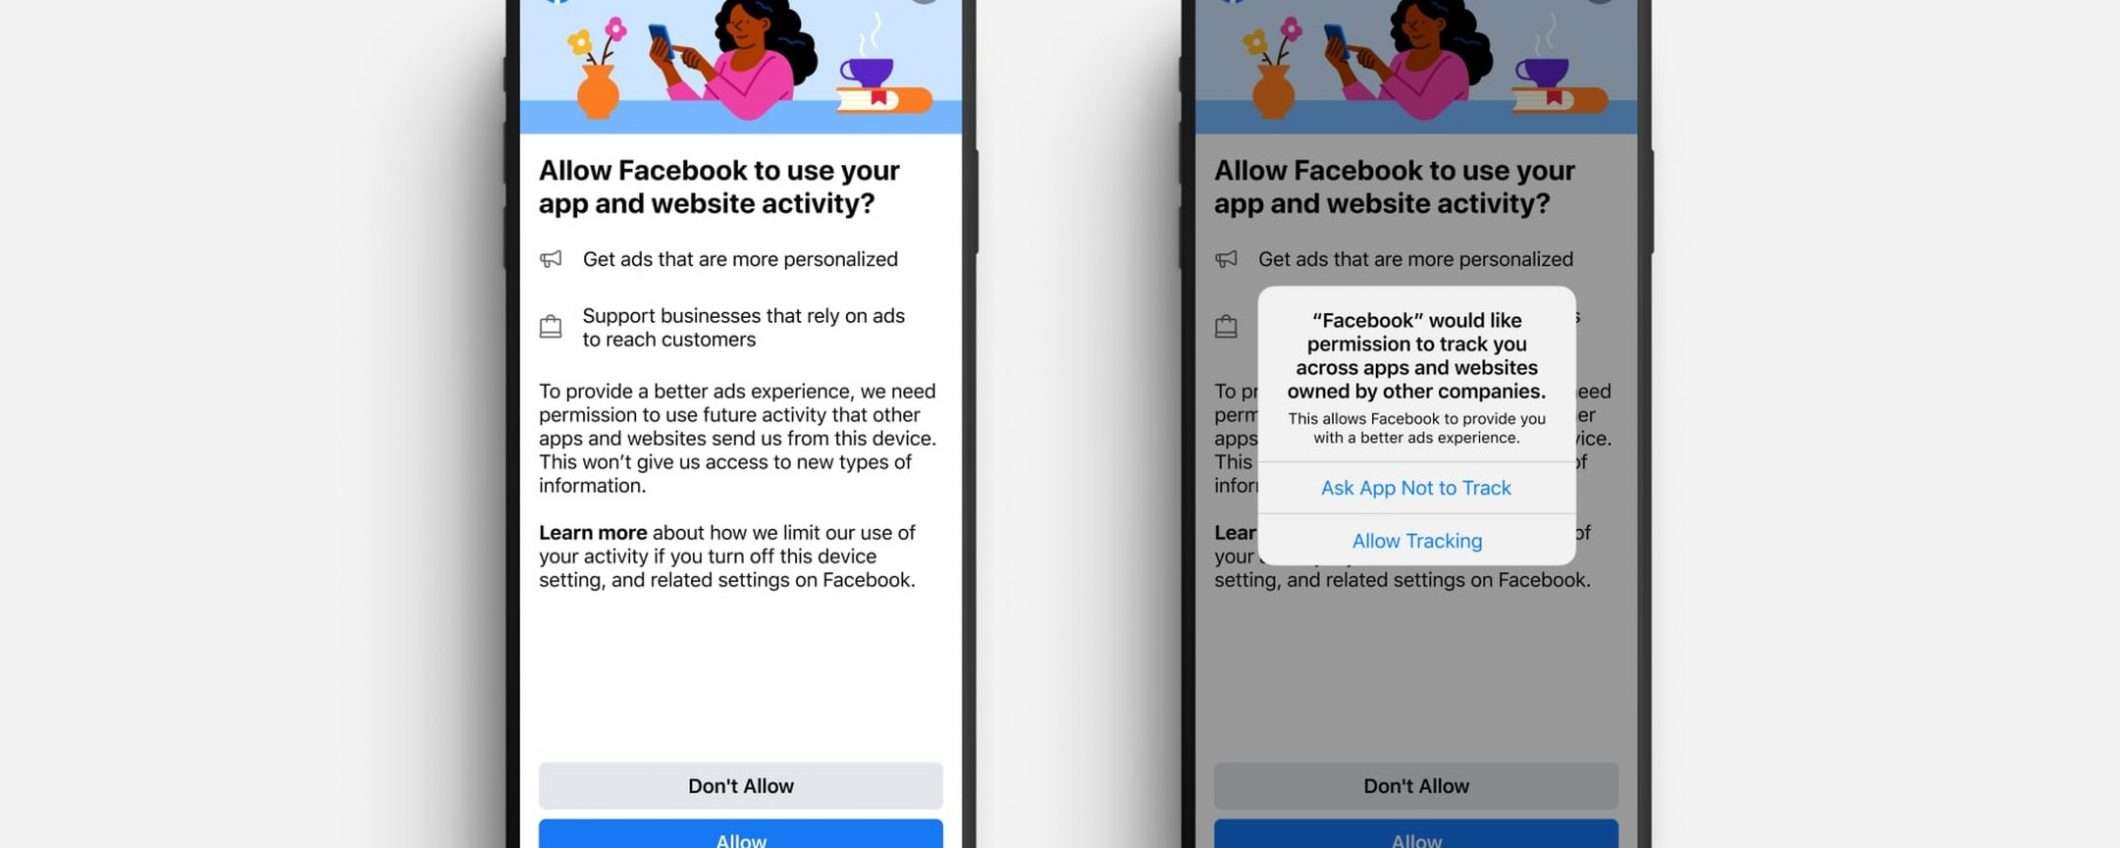 Pubblicità: Facebook chiede di attivare il tracciamento